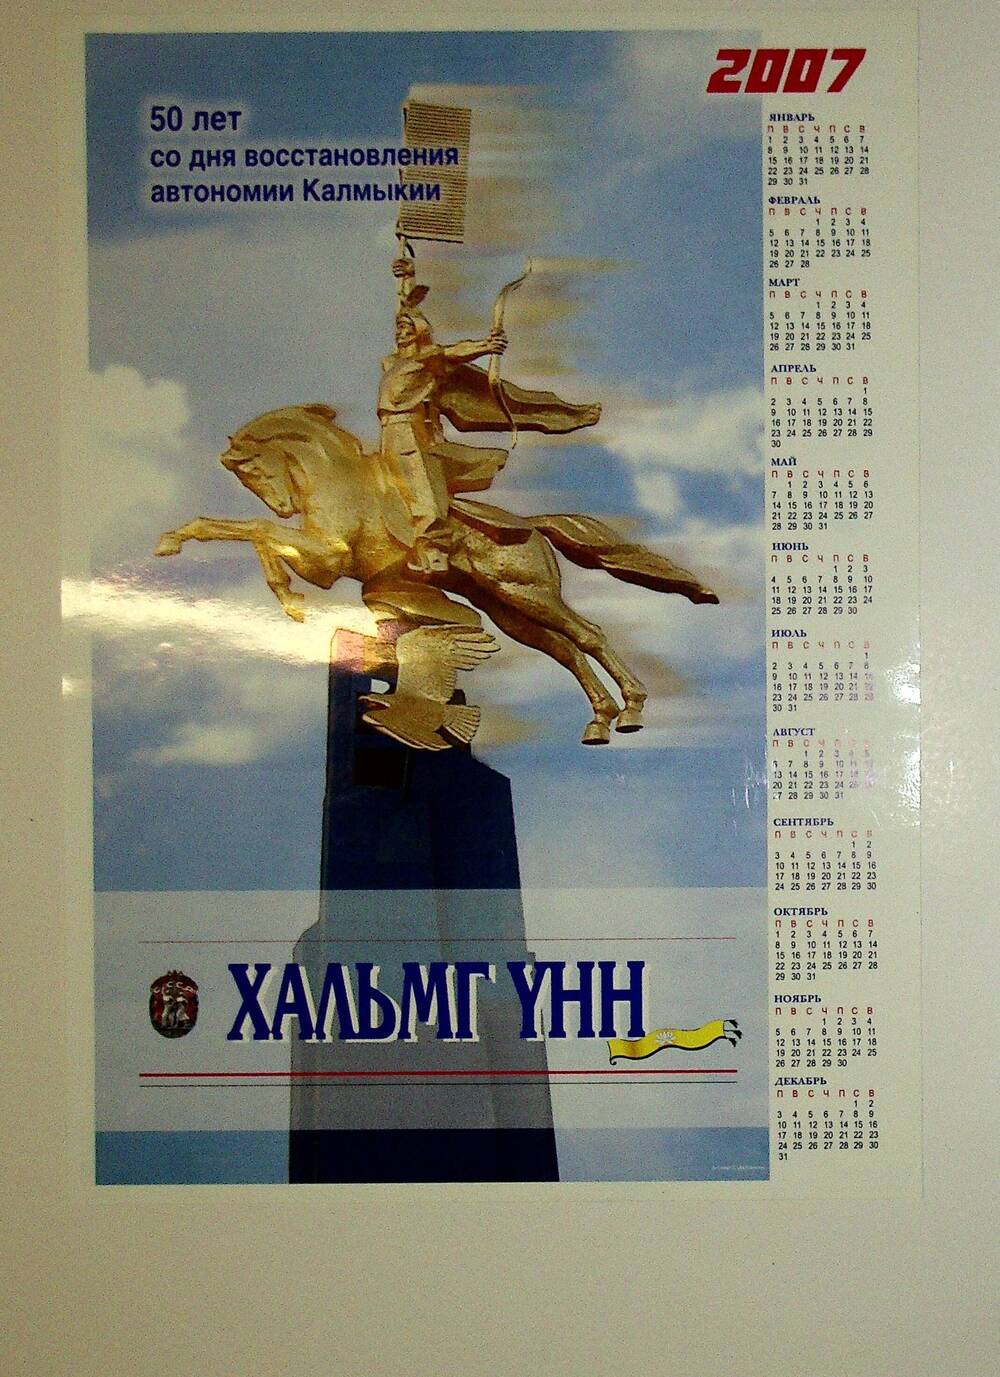 Календарь настенный на 2007 г.